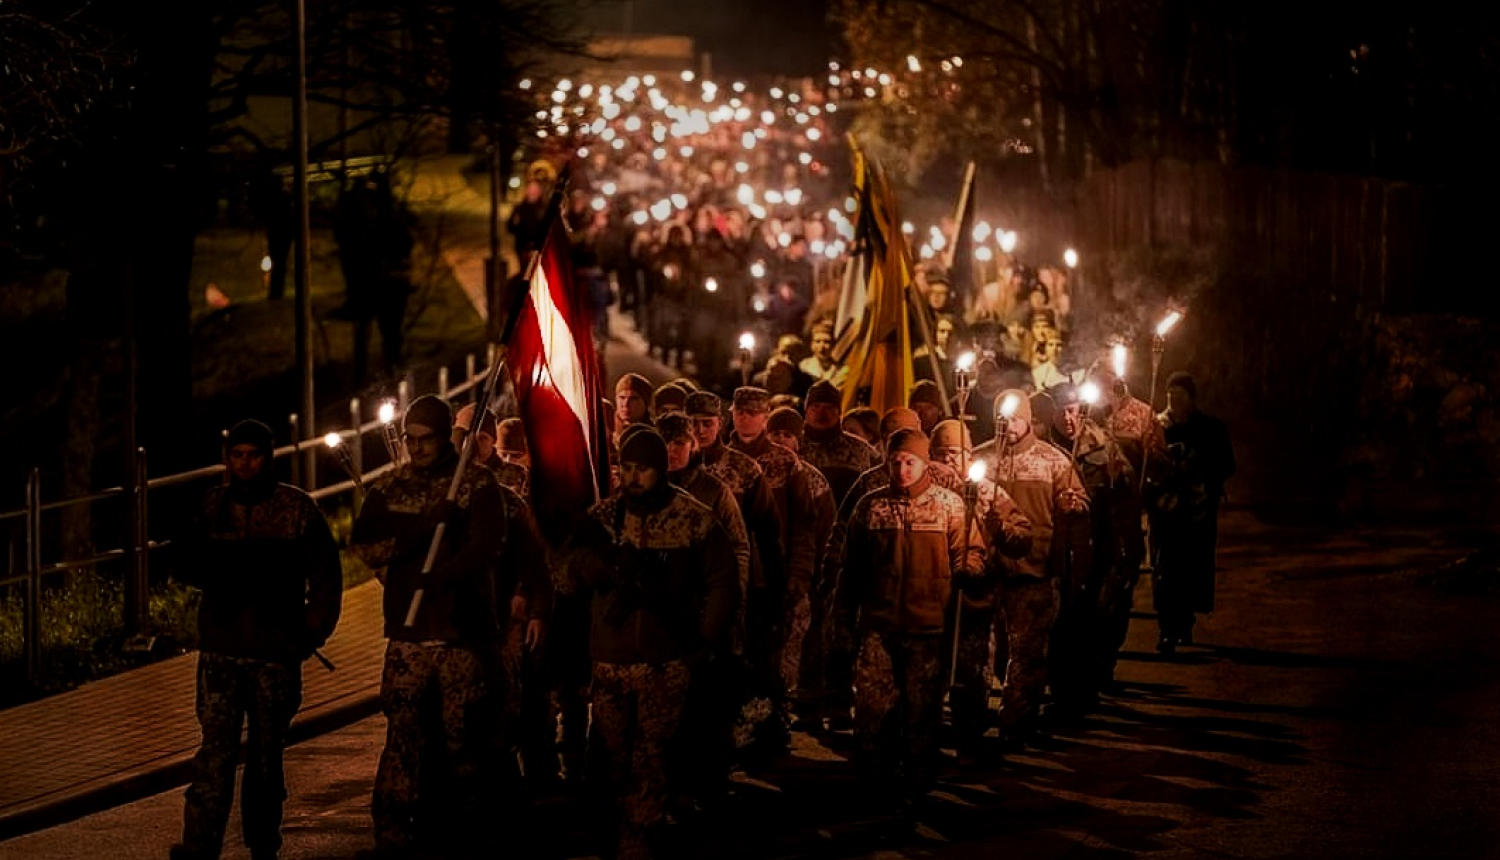 Zemessardzes 22.kaujas nodrošinājuma bataljons sveic Valkas novada iedzīvotājus valsts svētkos